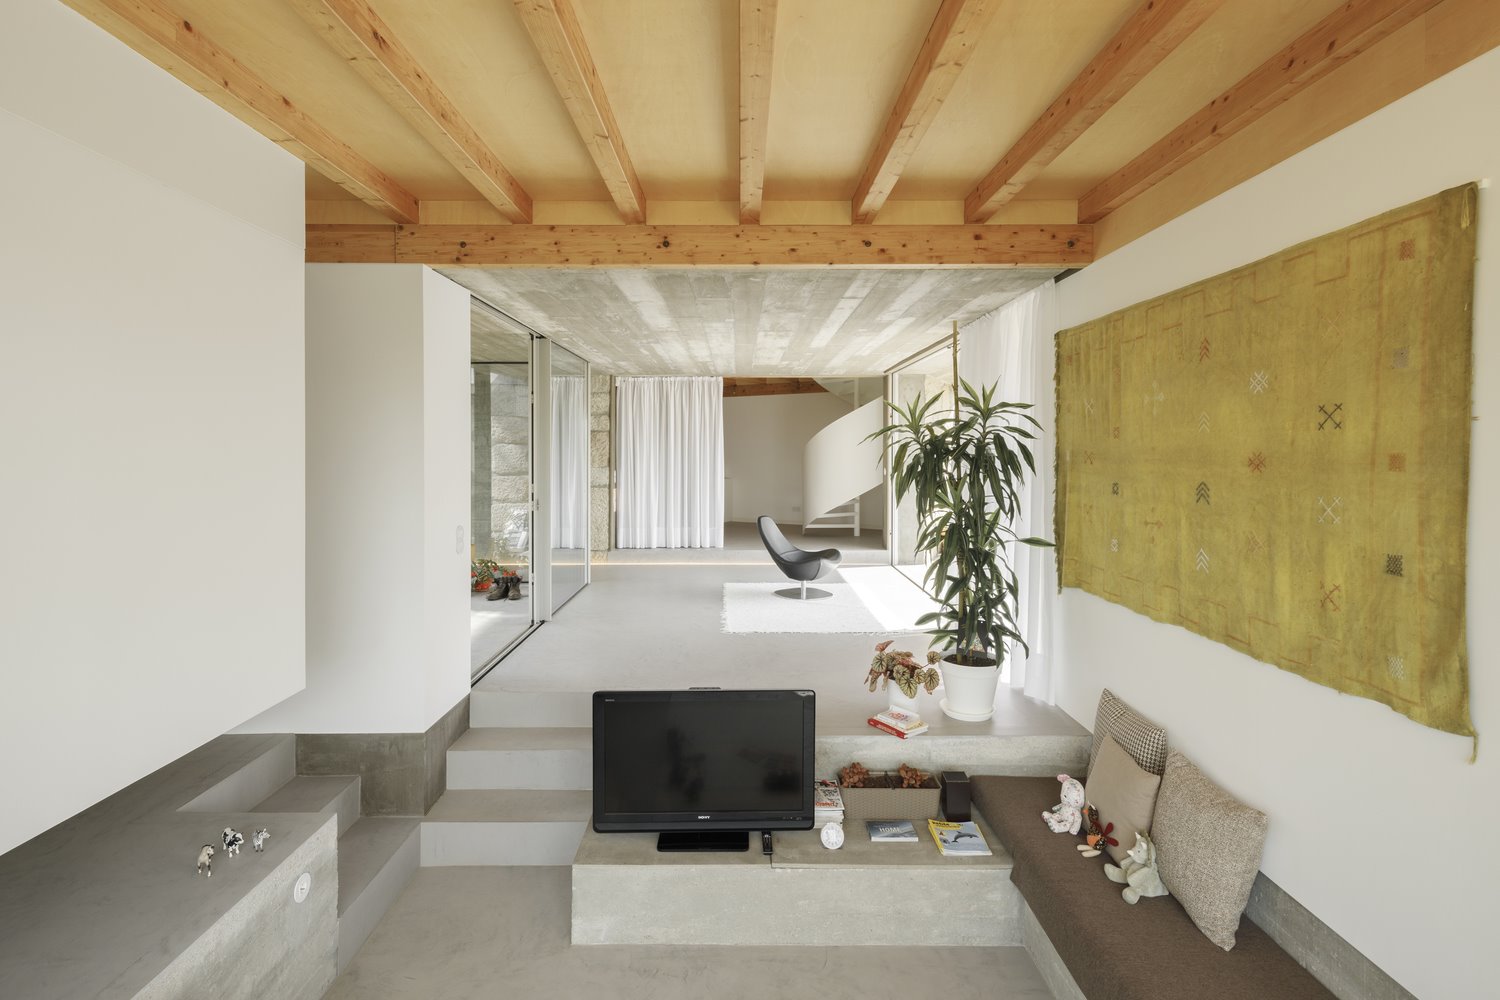 Salon de una casa en portugal con techos de madera